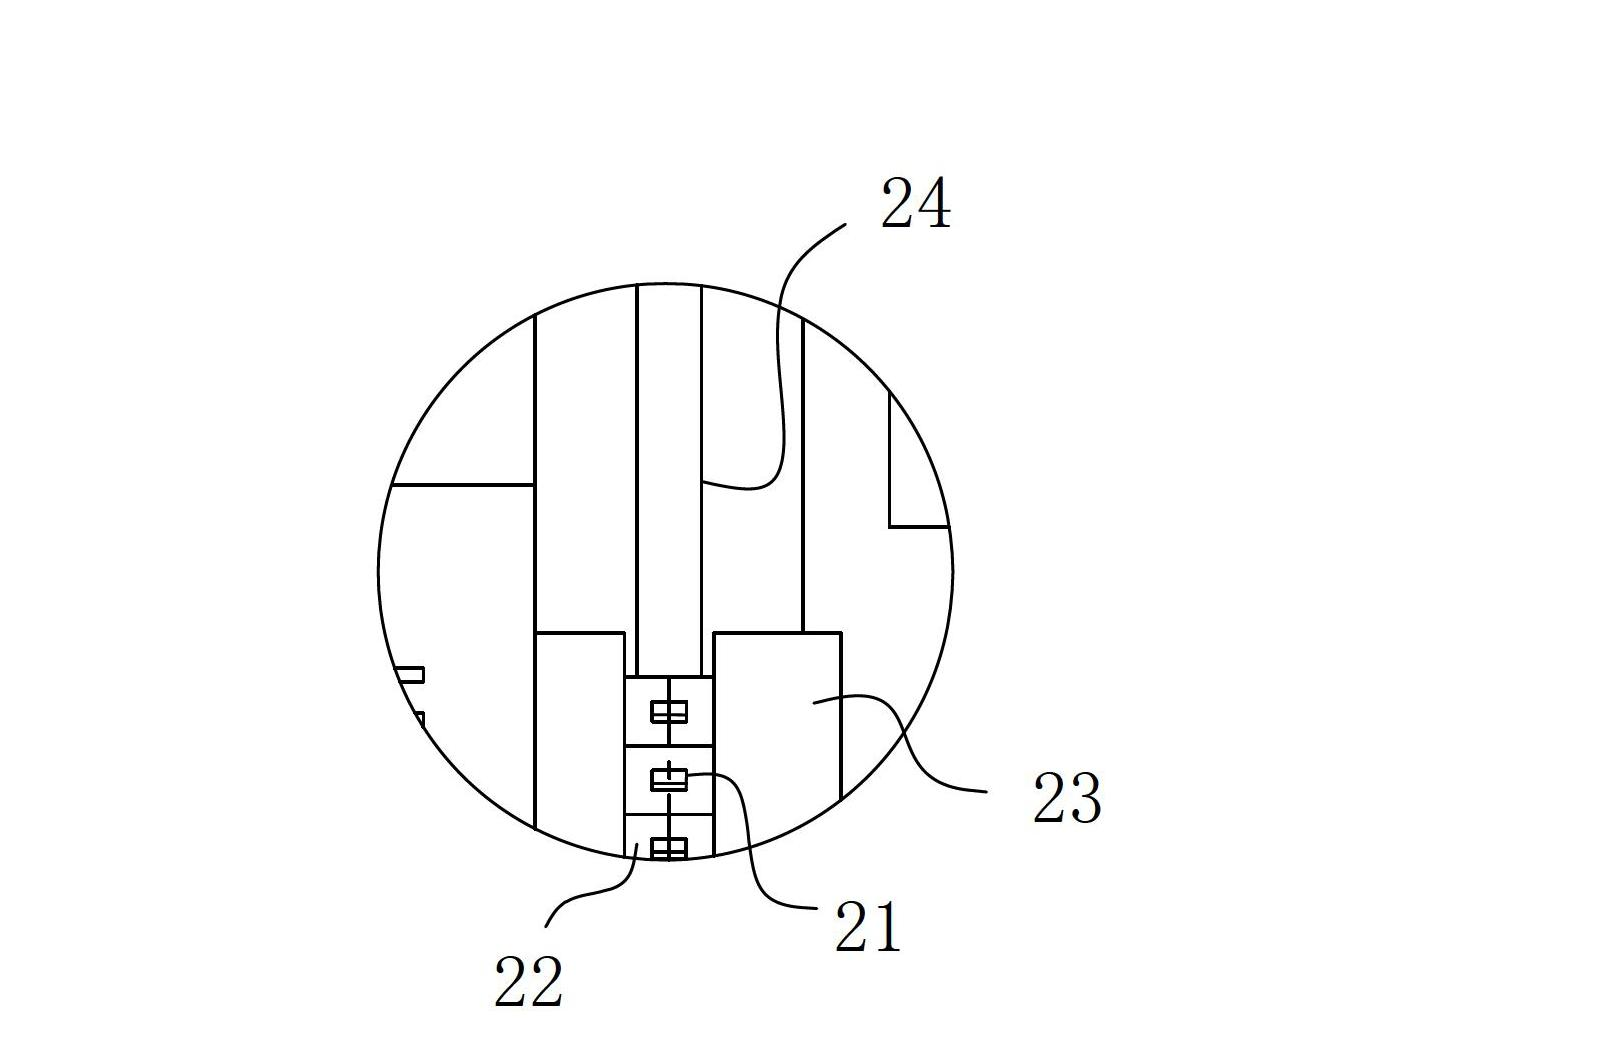 Positioning mechanism based on heat radiating tubes